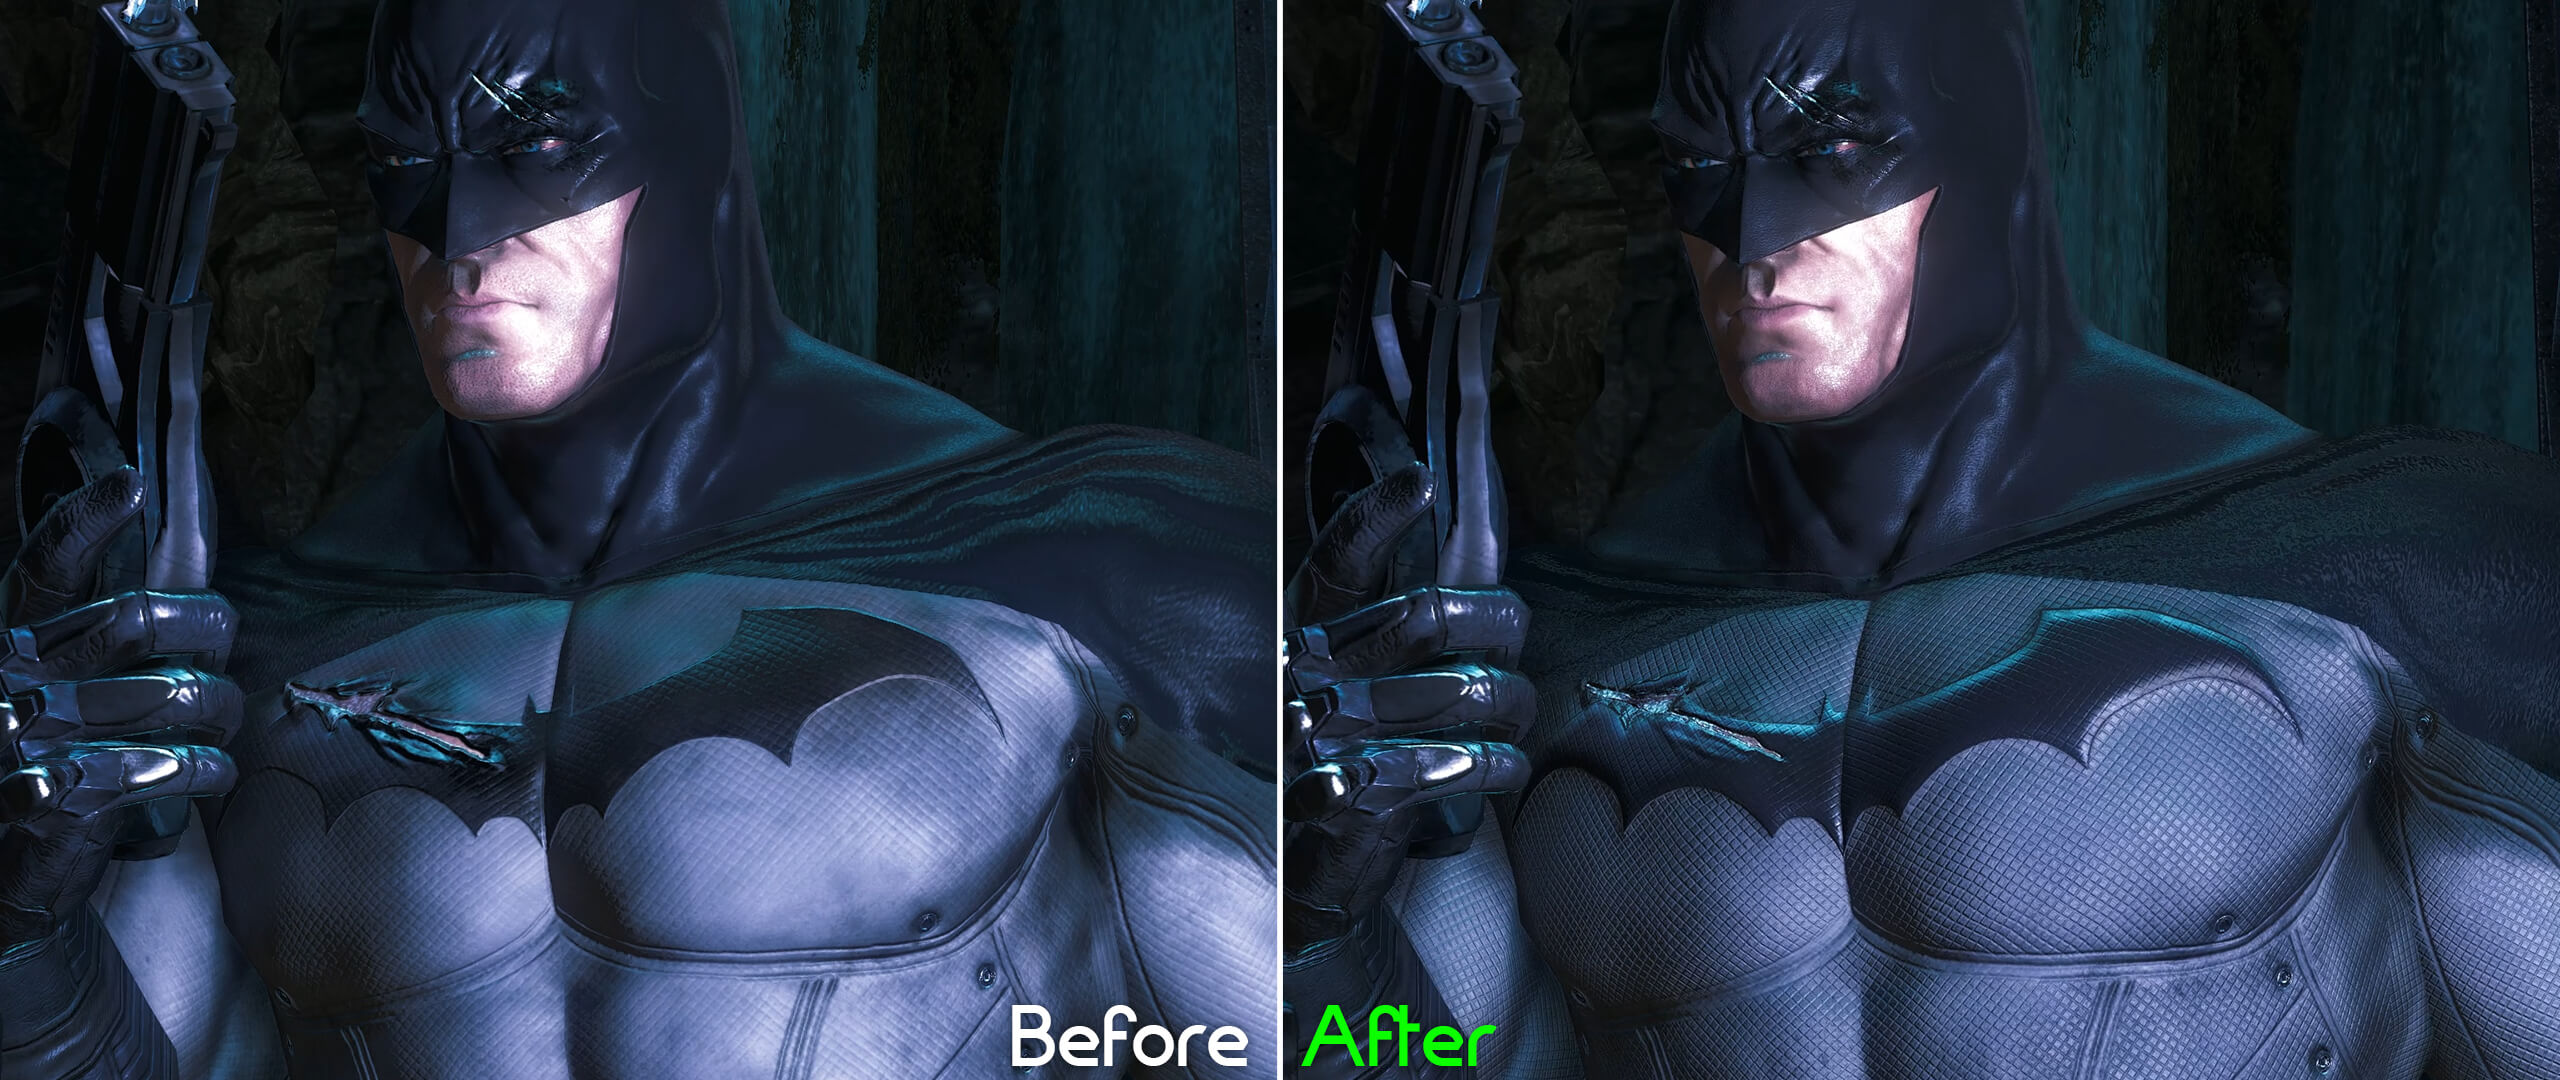 new-batman-arkham-asylum-hd-texture-pack-upgrades-enhances-50-of-game